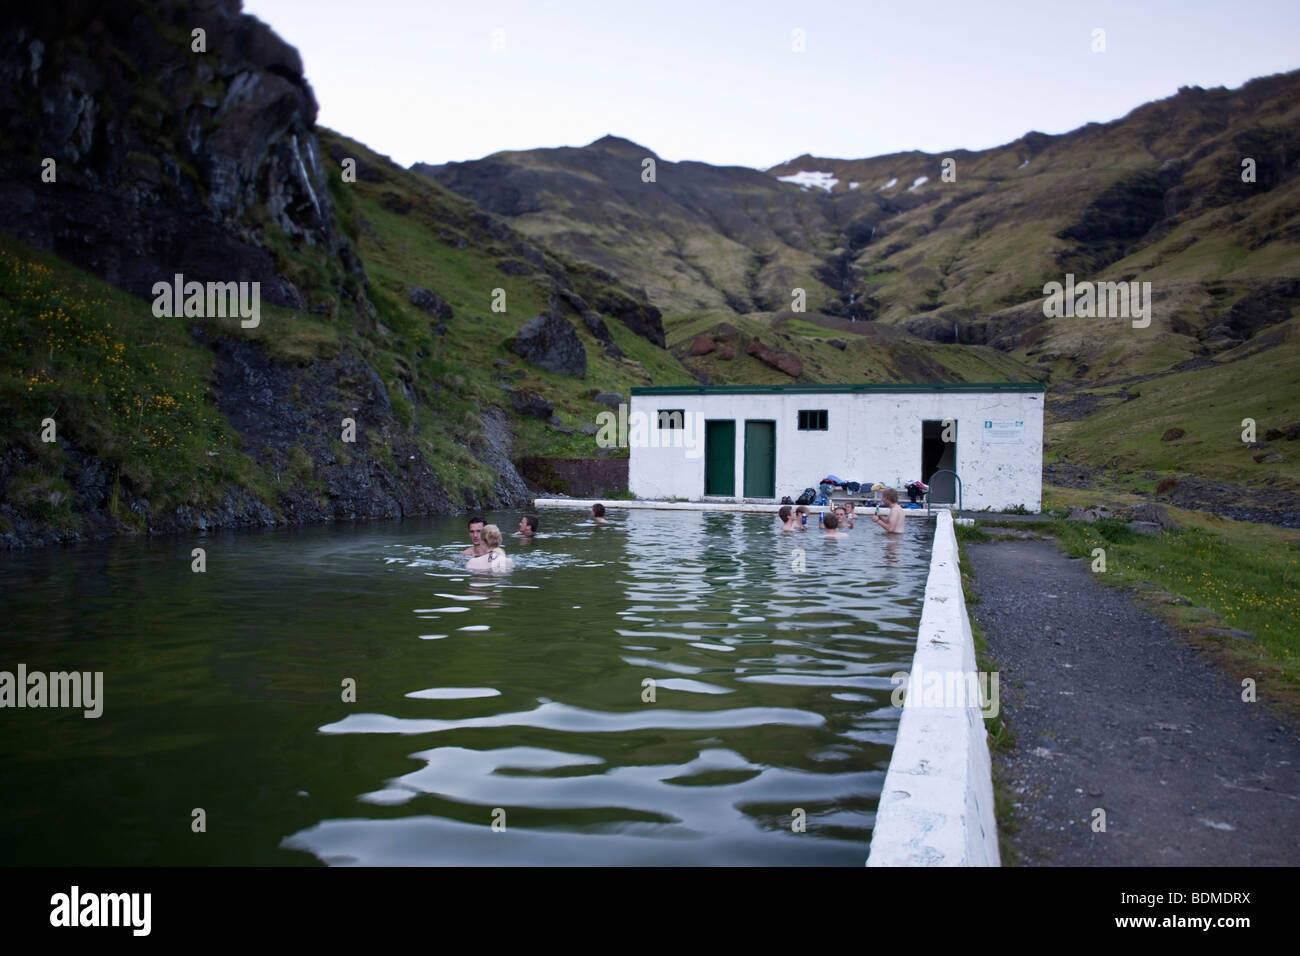 La piscine extérieure, l'Islande, Seljavallalaug Banque D'Images